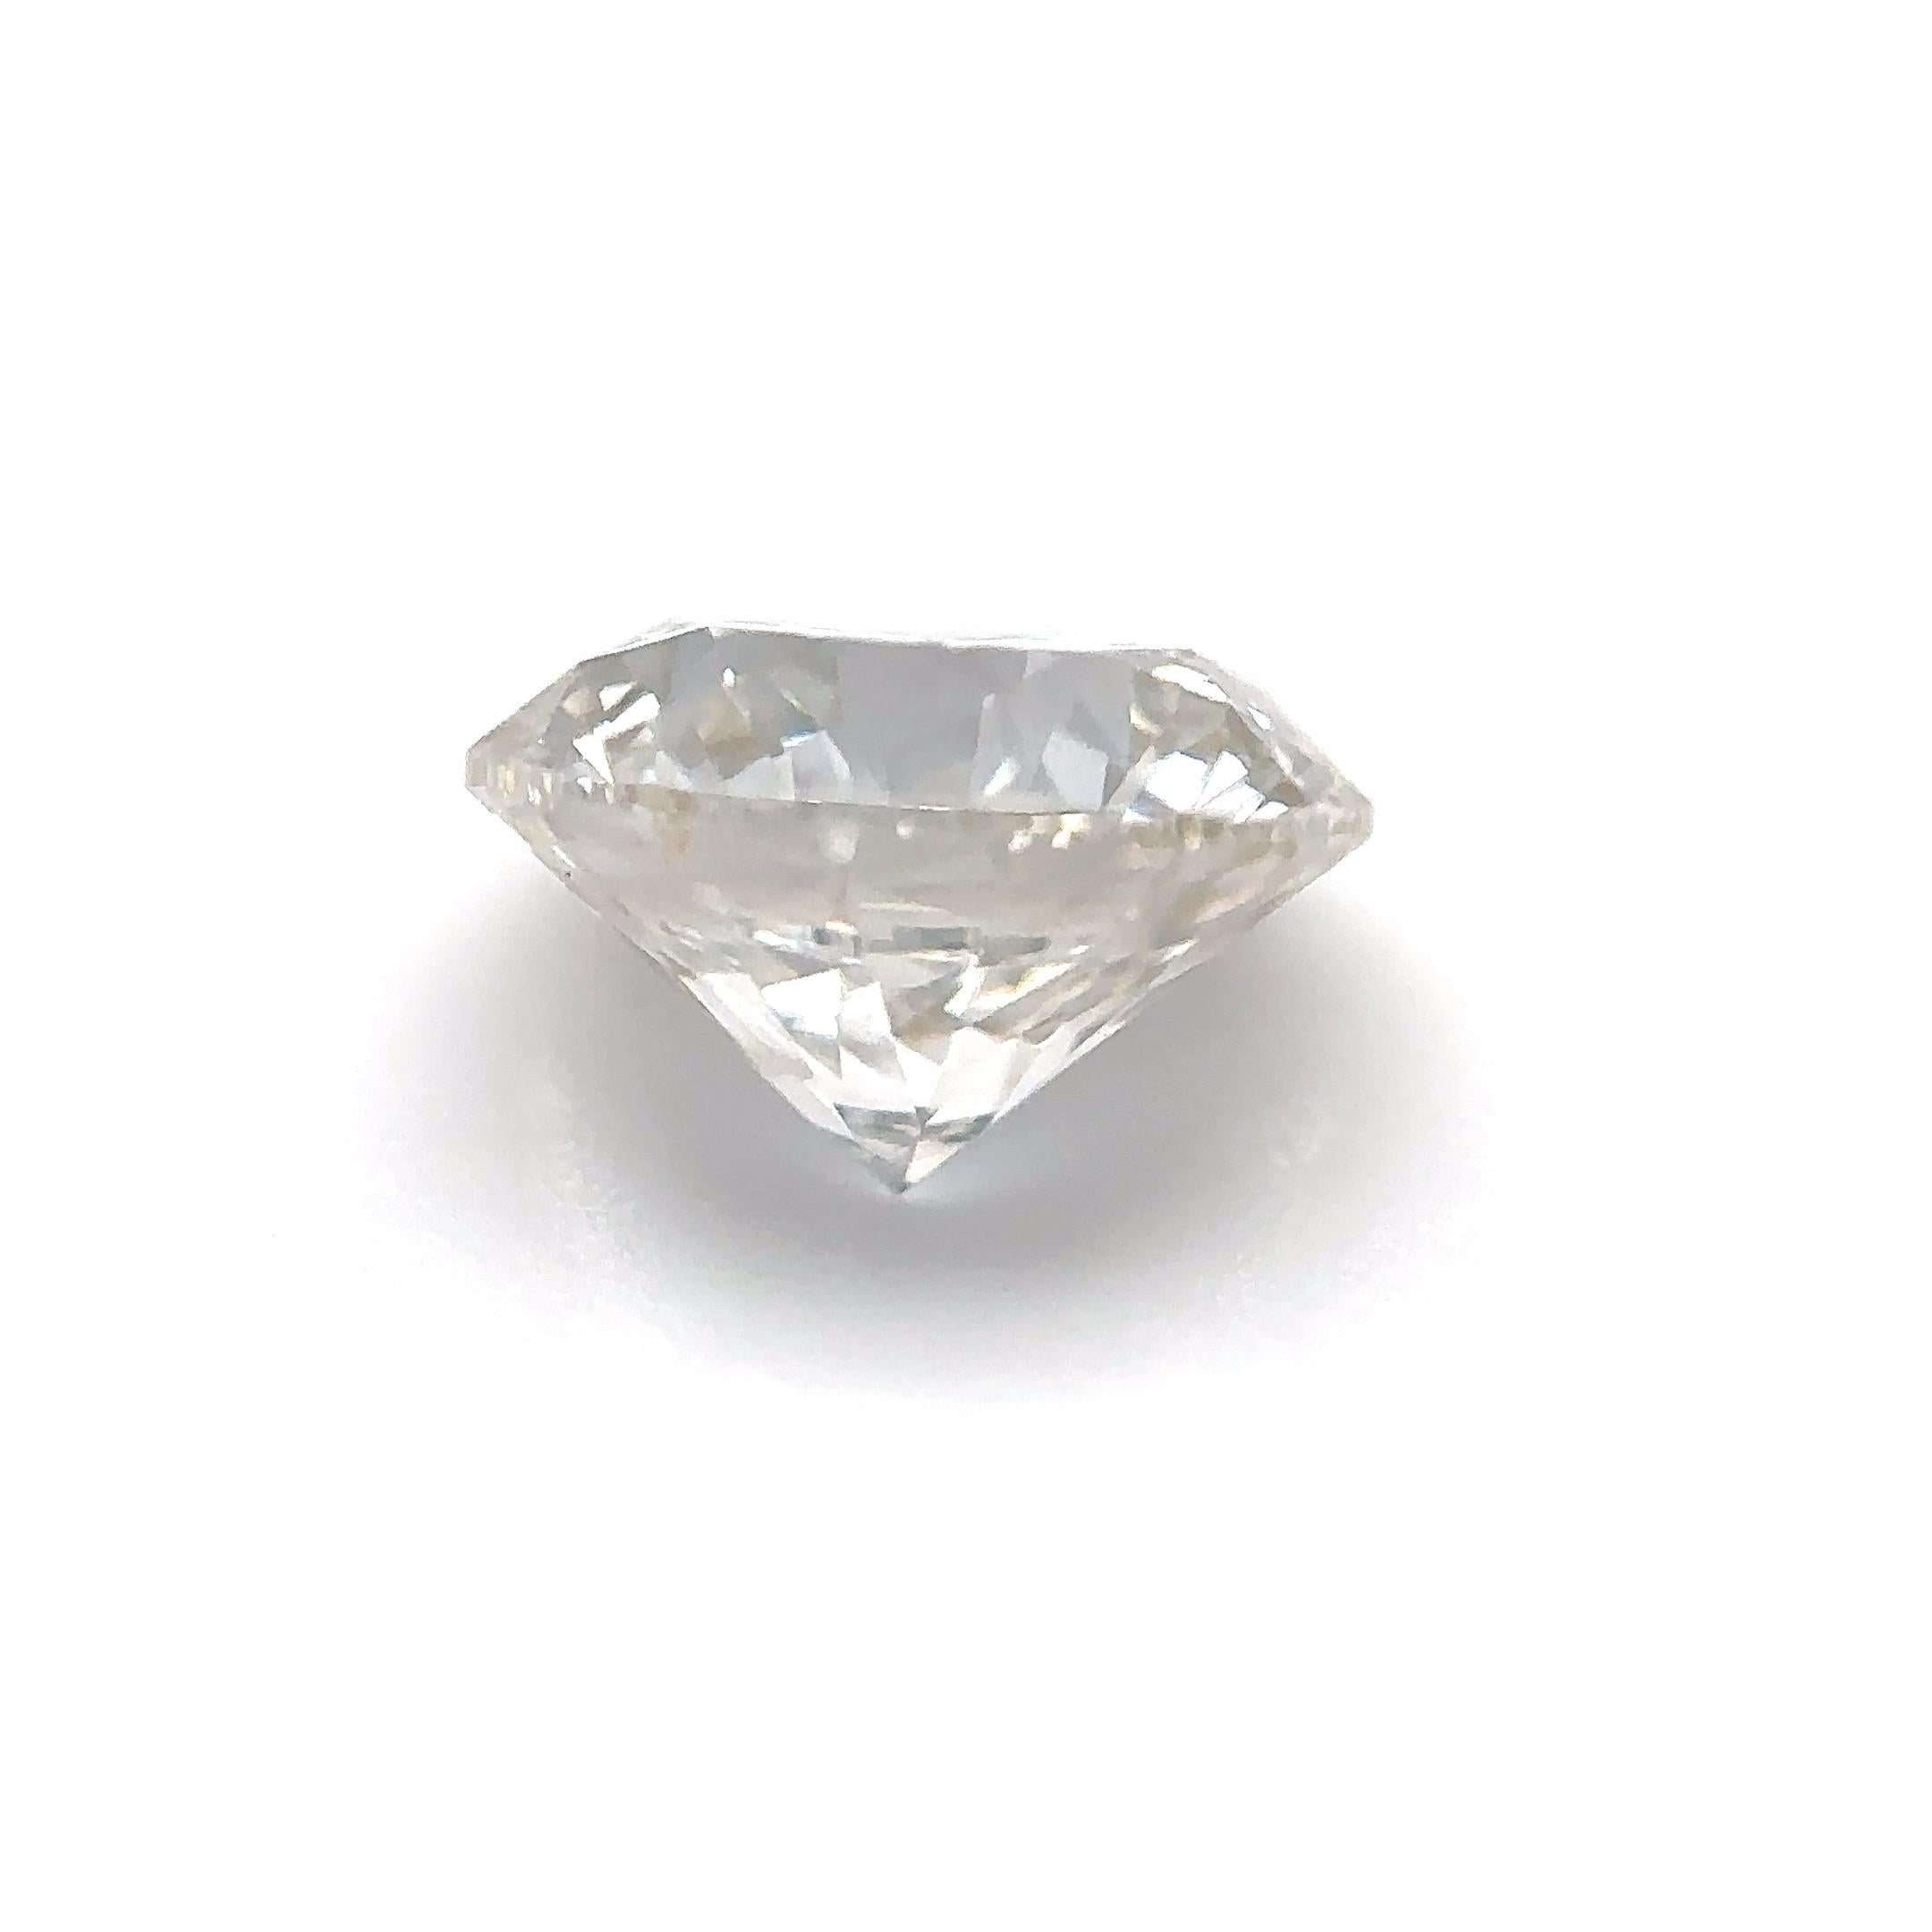 GIA Certified 1.01 Carat Round Brilliante Natural Diamond Loose Stone (Customization Option)

Couleur : J
Clarté : VS1

Idéal pour les bagues de fiançailles, les alliances, les colliers et les boucles d'oreilles en diamant. Contactez-nous pour